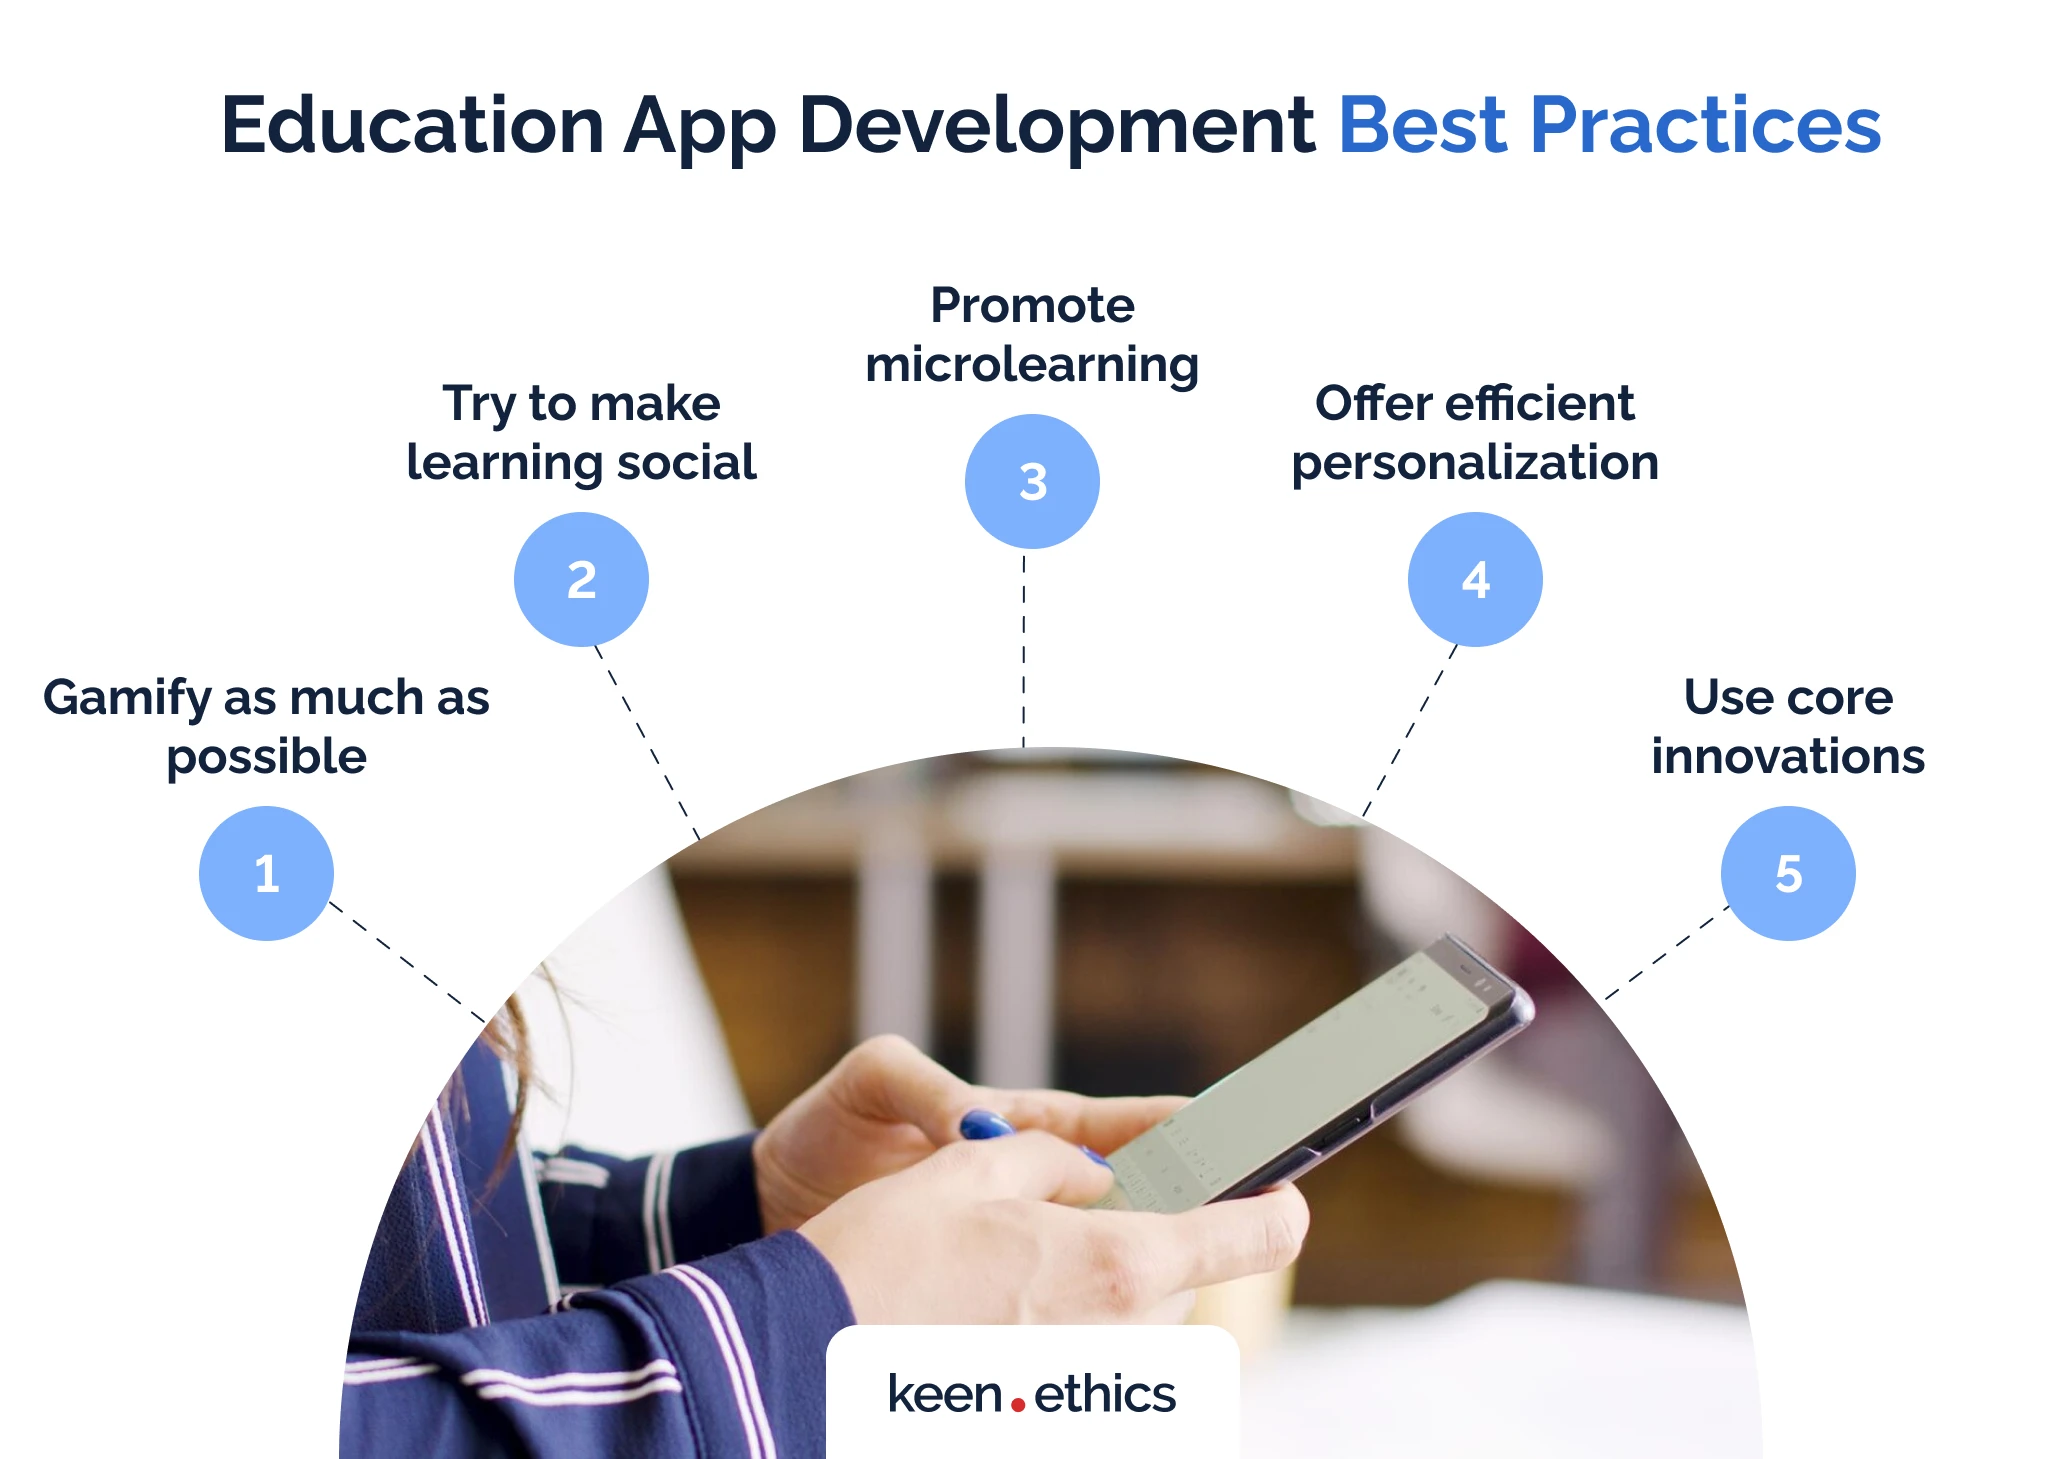 Education app development best practices